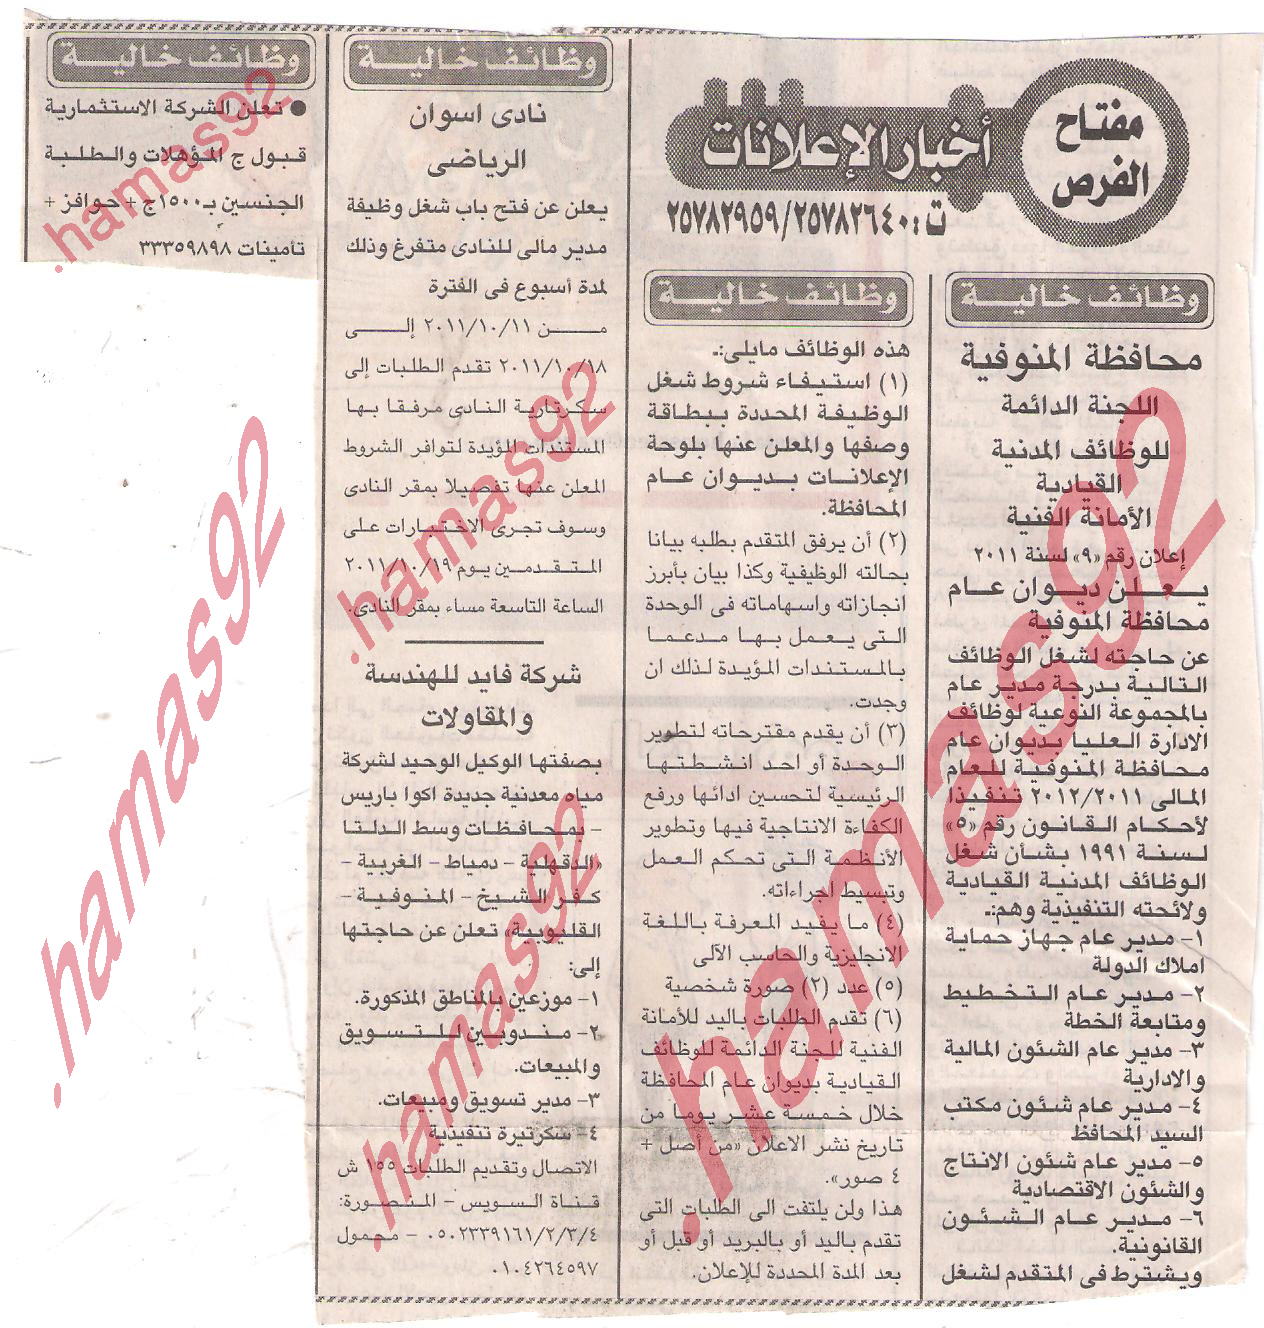 وظائف خالية من جريدة الاخبار 10/10/2011 -اعلانات وظائف خالية من جريدة الاخبار 10/10/2011  Picture+001